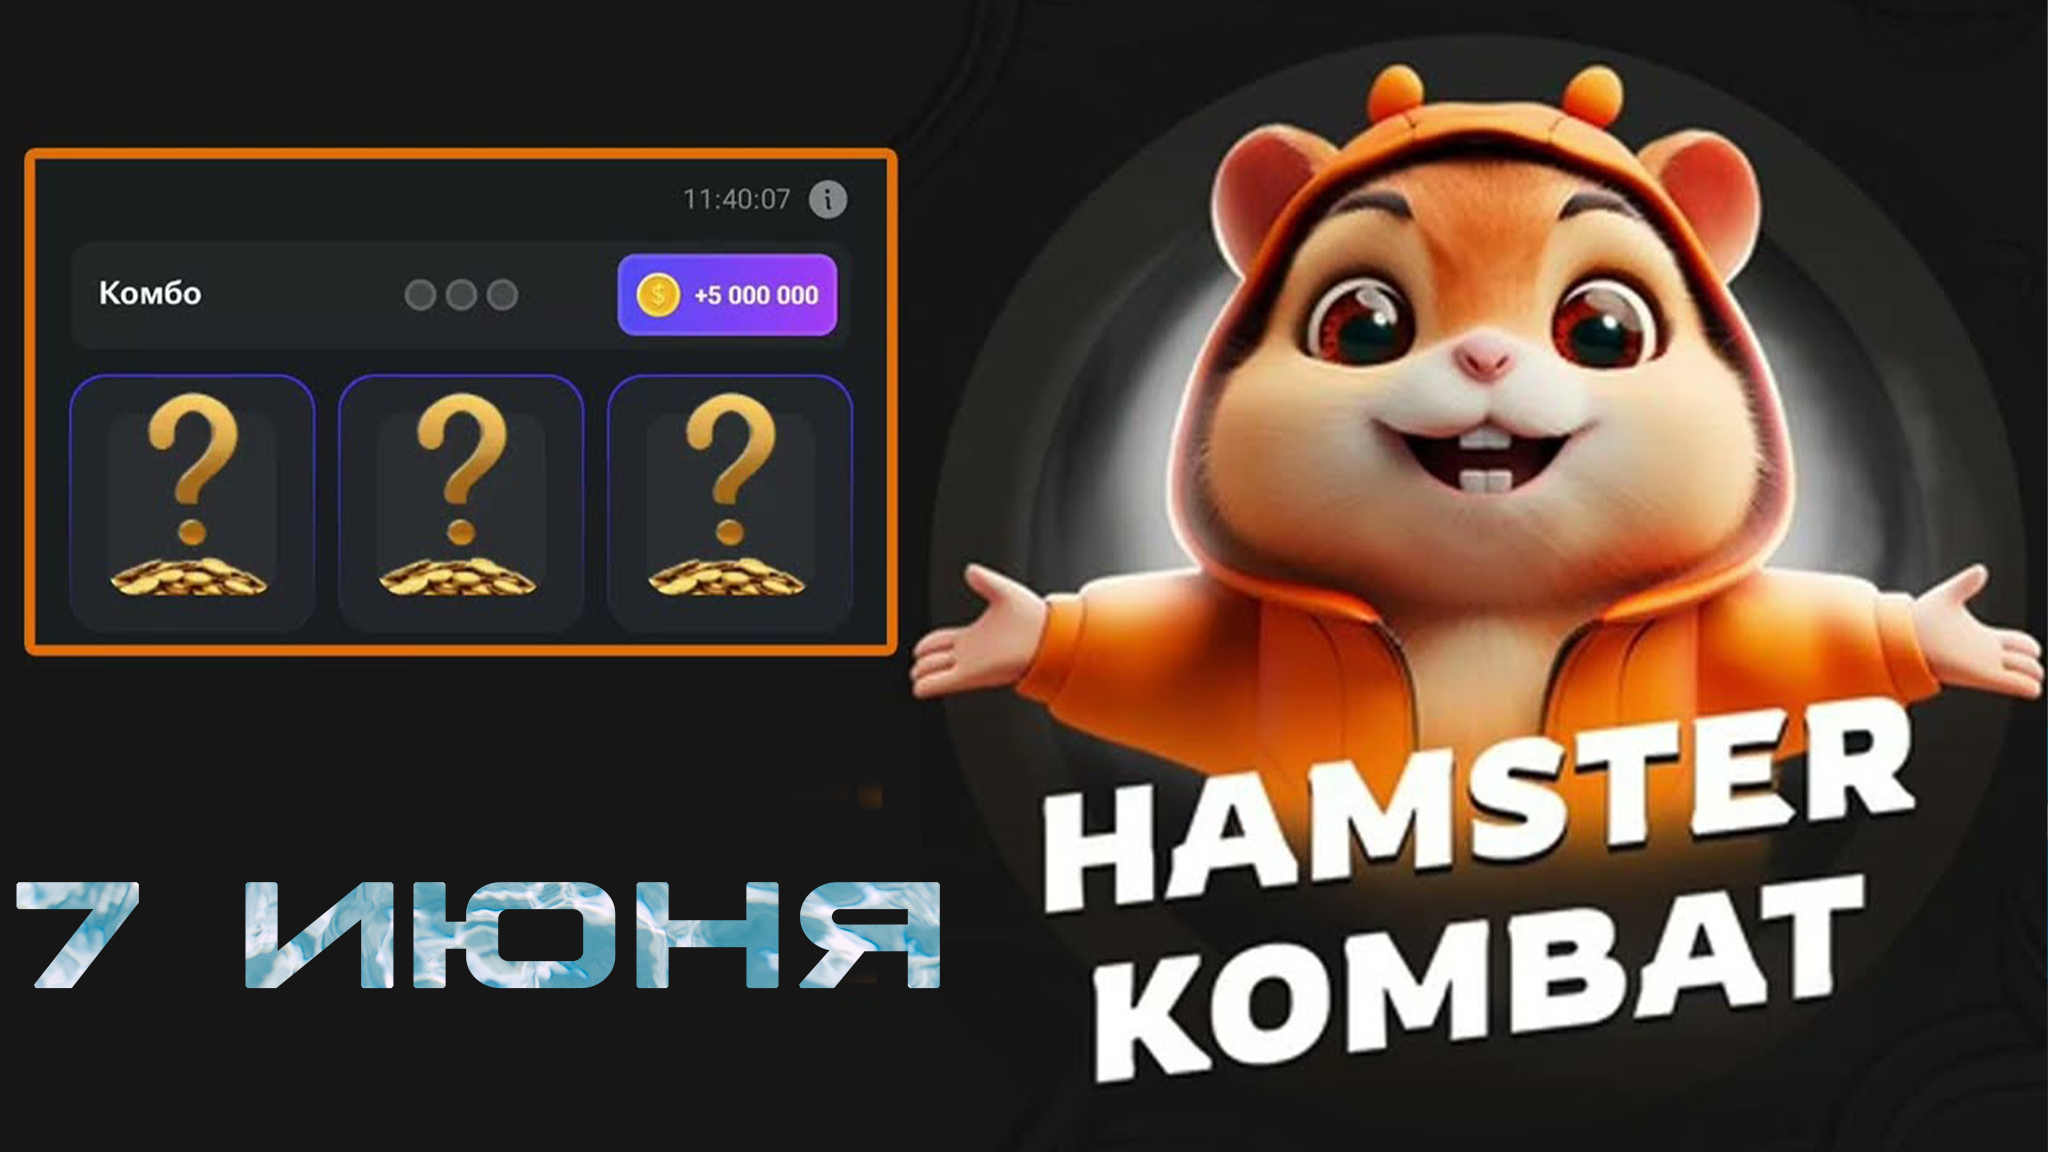 7 июня комбо карты Hamster KOMBAT